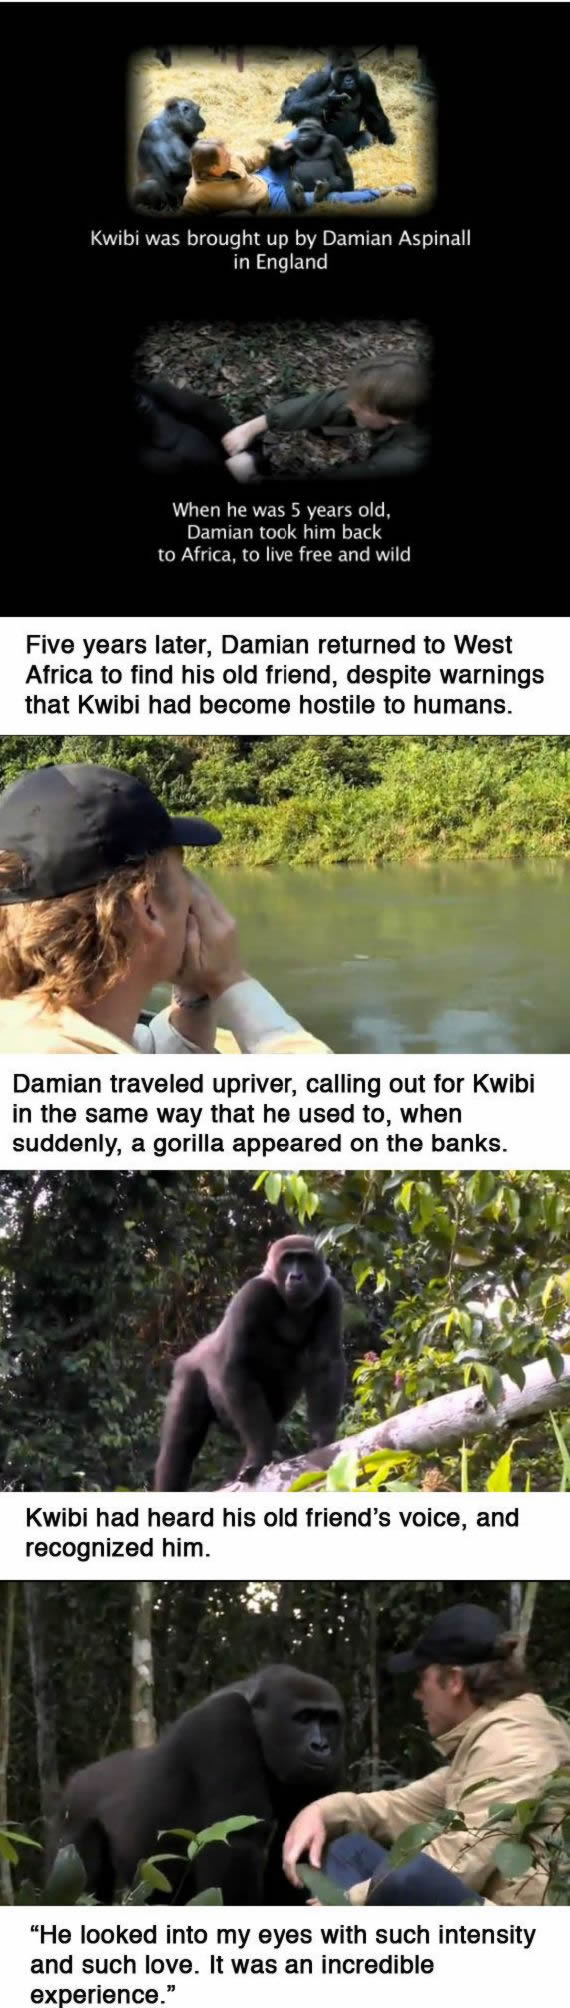 Kwibi gorila